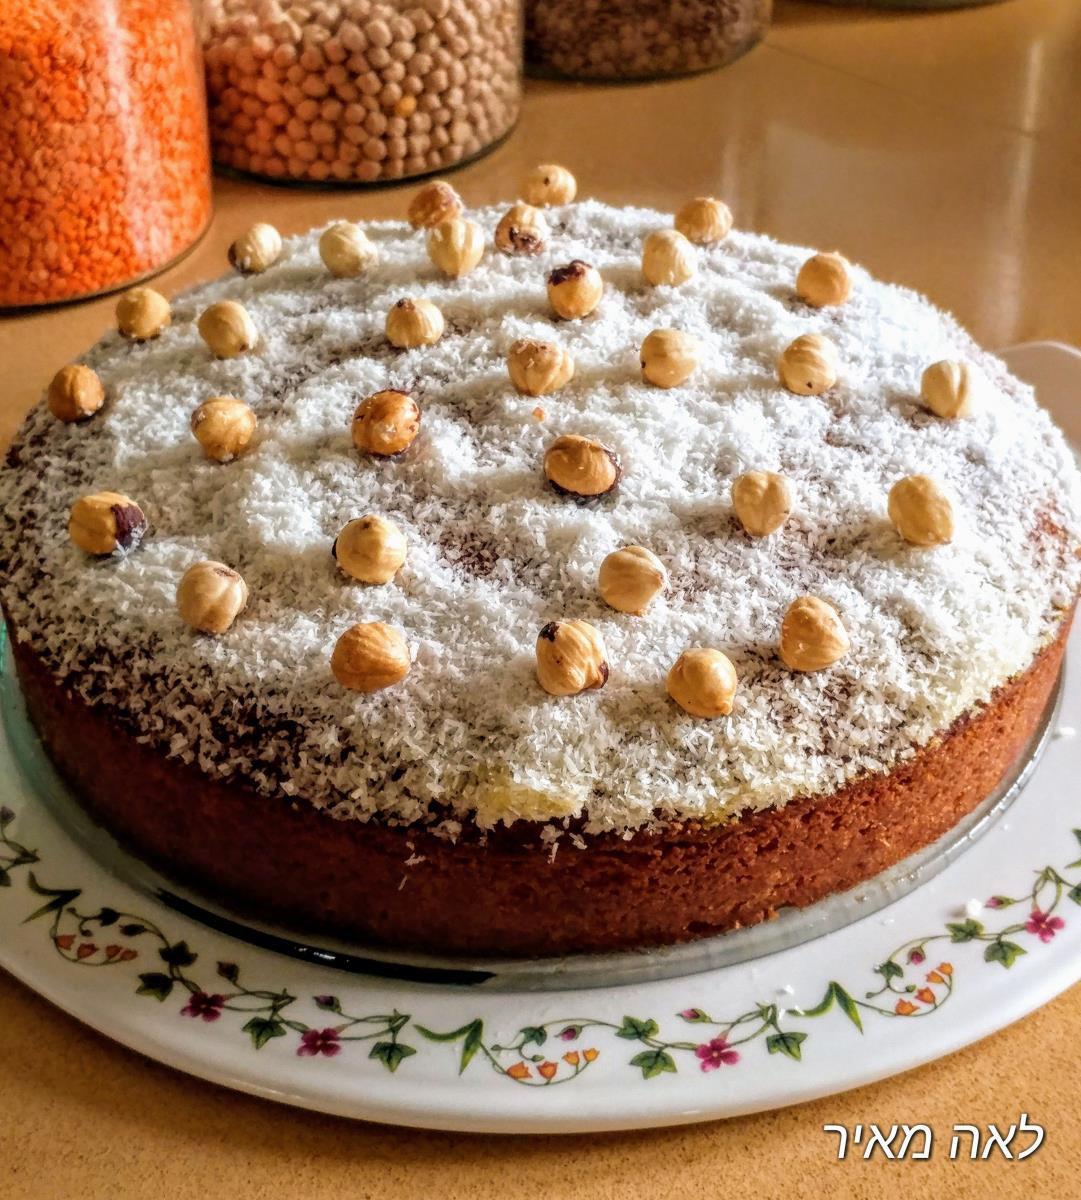 עוגת כתר יפהפייה עם סולת וסירופ תפוזים מדהימה ב-5 דקות של סבתא לאה 